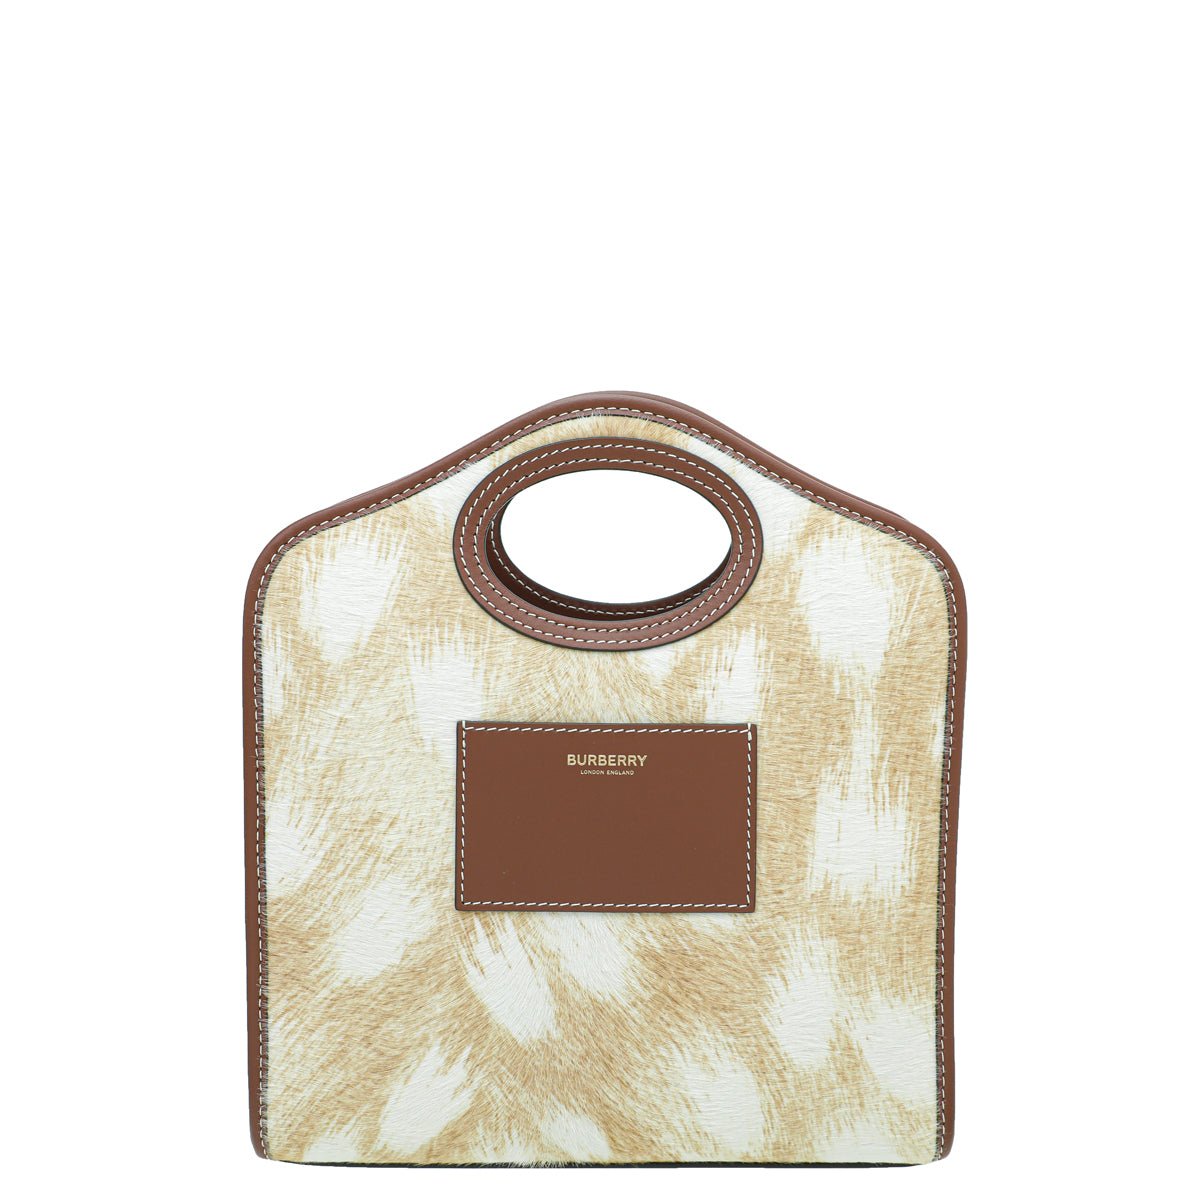 Burberry - Burberry Beige Calf Hair Mini Pocket Bag | The Closet